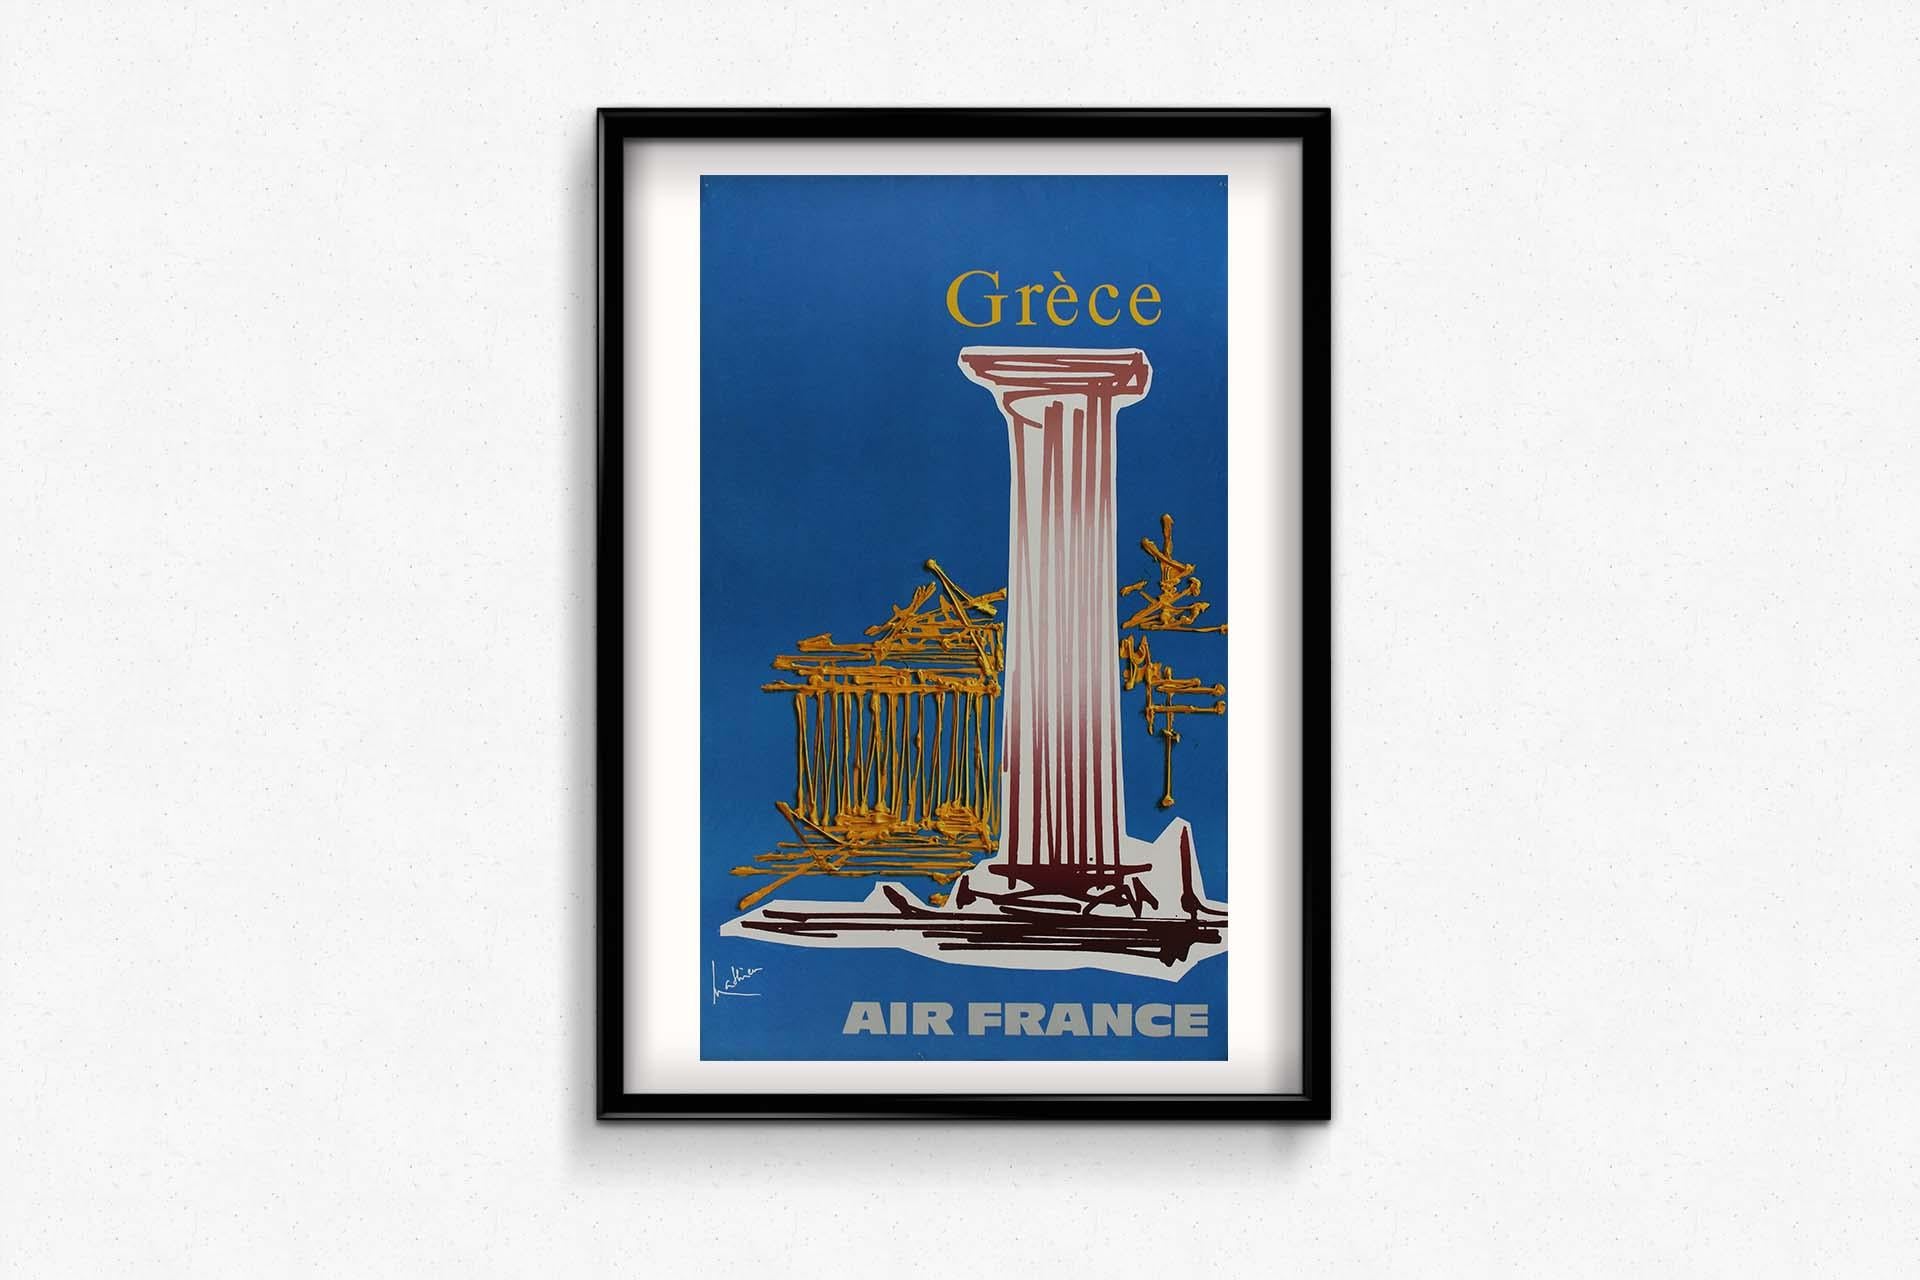 Im Bereich der Reiseplakate gibt es Kreationen, die als zeitlose Meisterwerke gelten, und das Air France Grèce-Plakat von Mathieu aus dem Jahr 1967 ist zweifellos ein solches Juwel. Dieses ikonische Kunstwerk lädt zu einer Reise in die bezaubernden